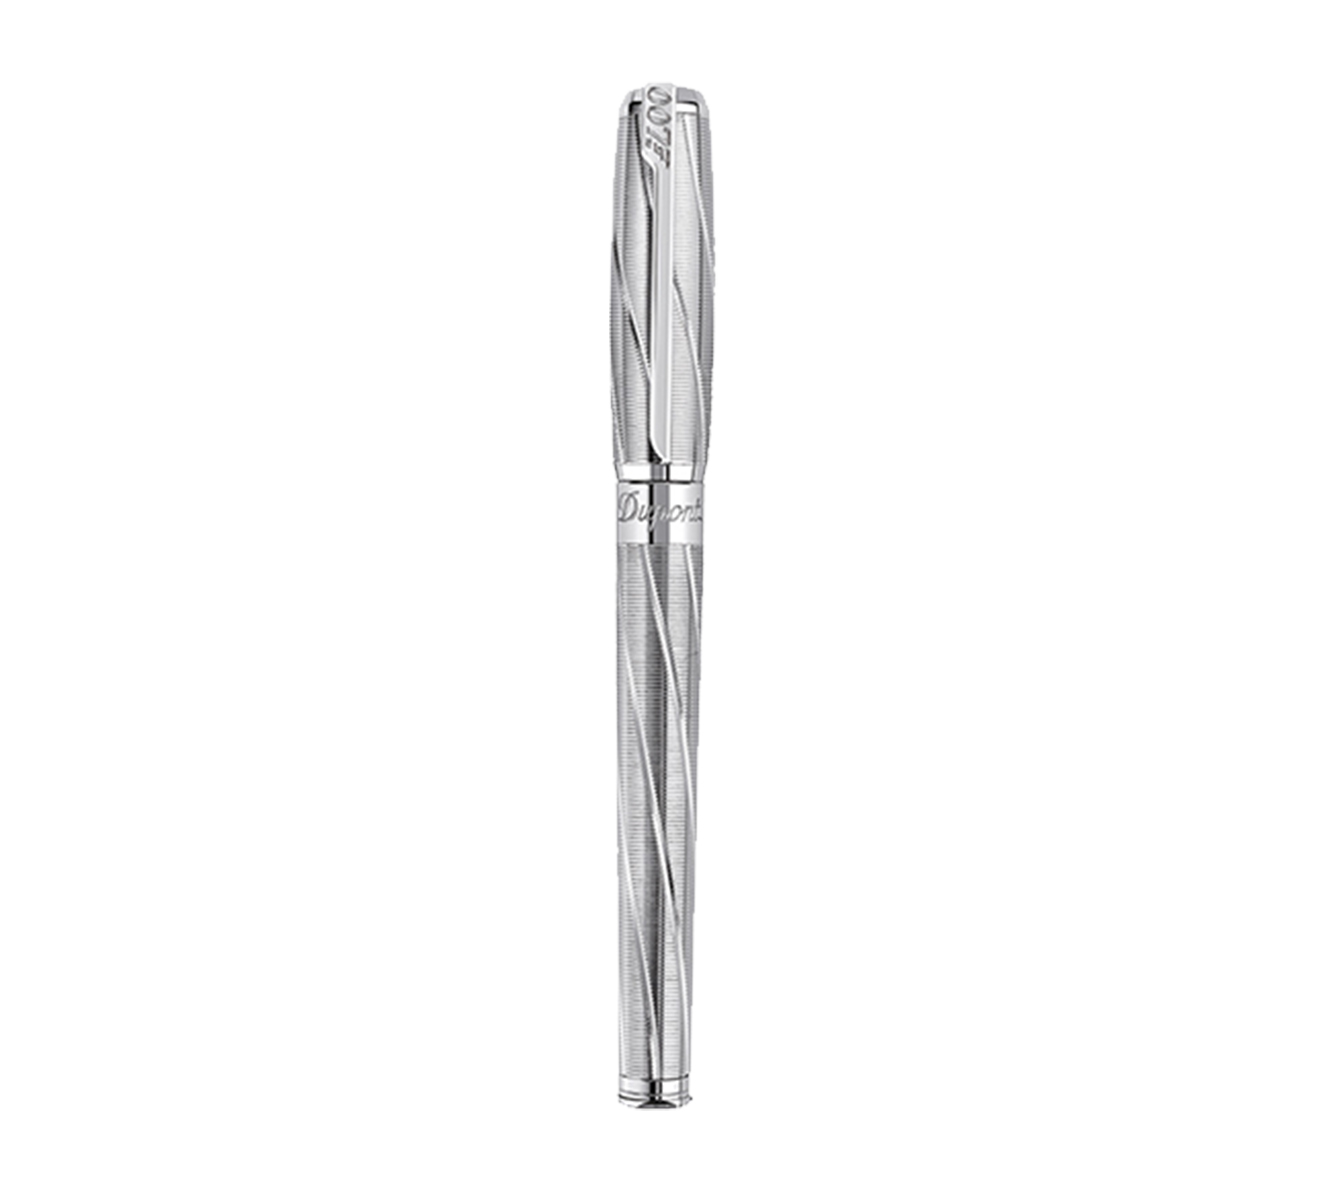 Перьевая ручка James Bond 007 S.T. Dupont Limited Edition 141033 - фото 2 – Mercury